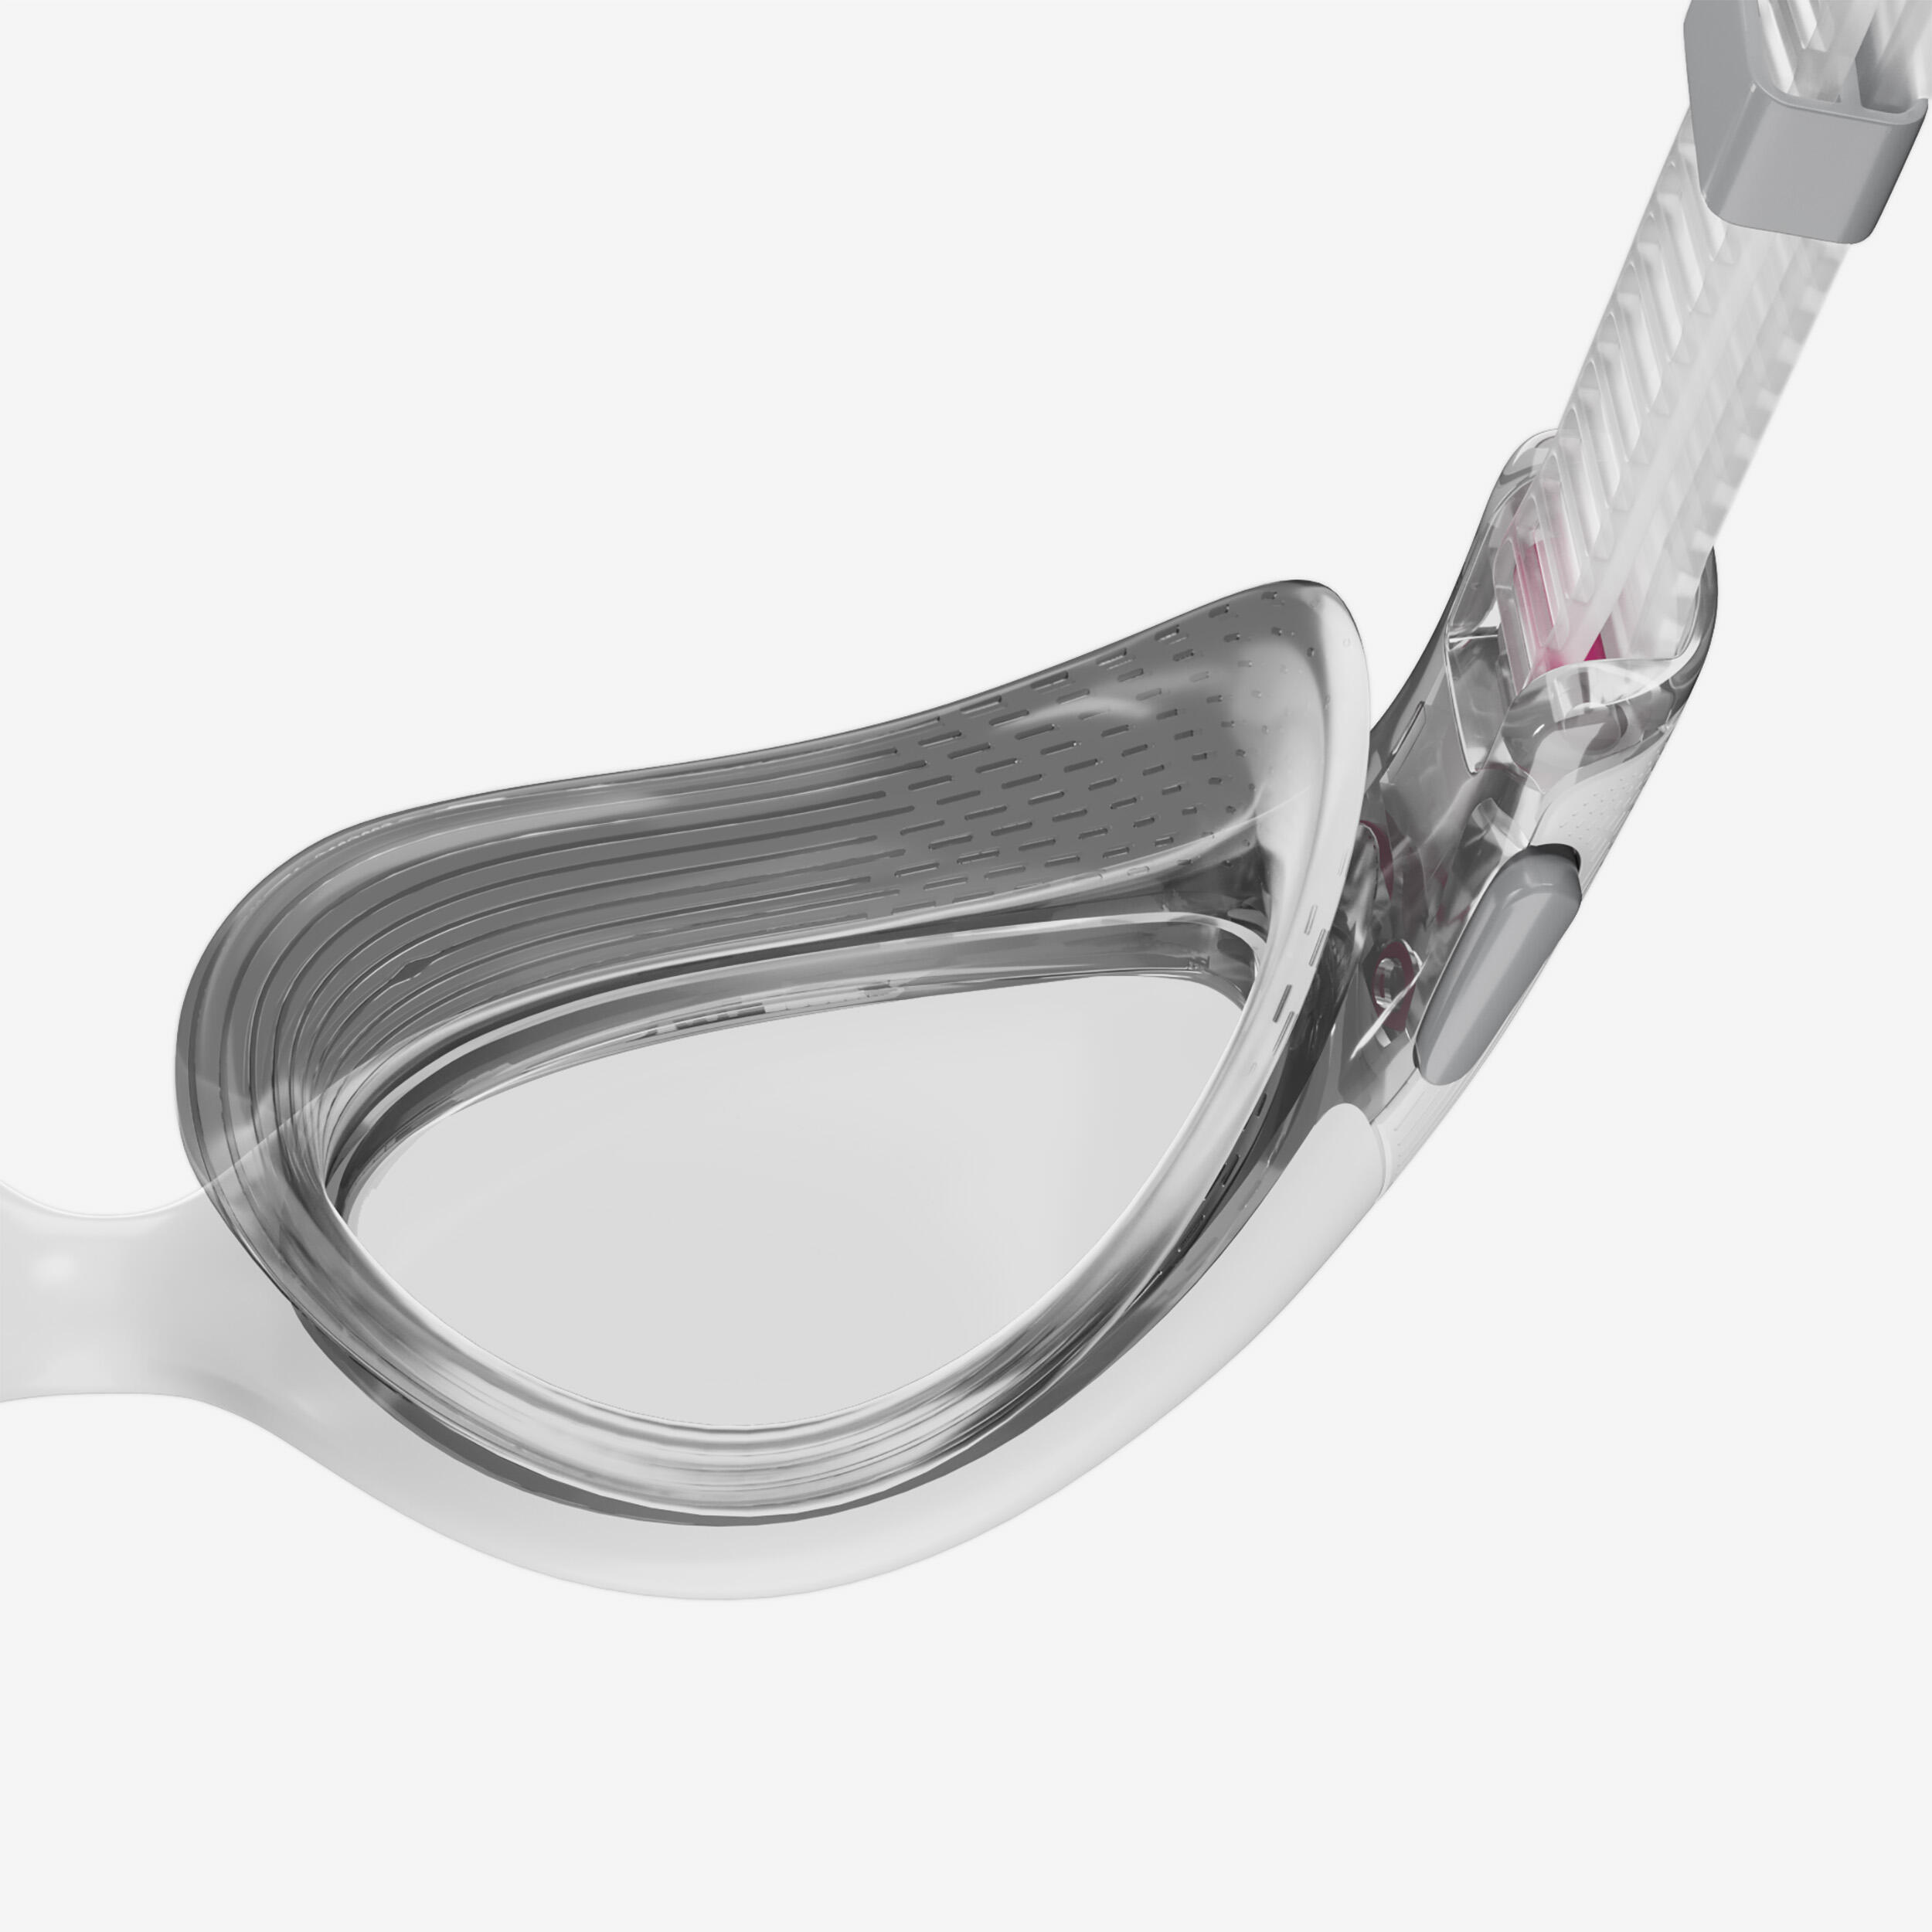 Women's swimming goggles SPEEDO BIOFUSE 2.0 white grey 4/4